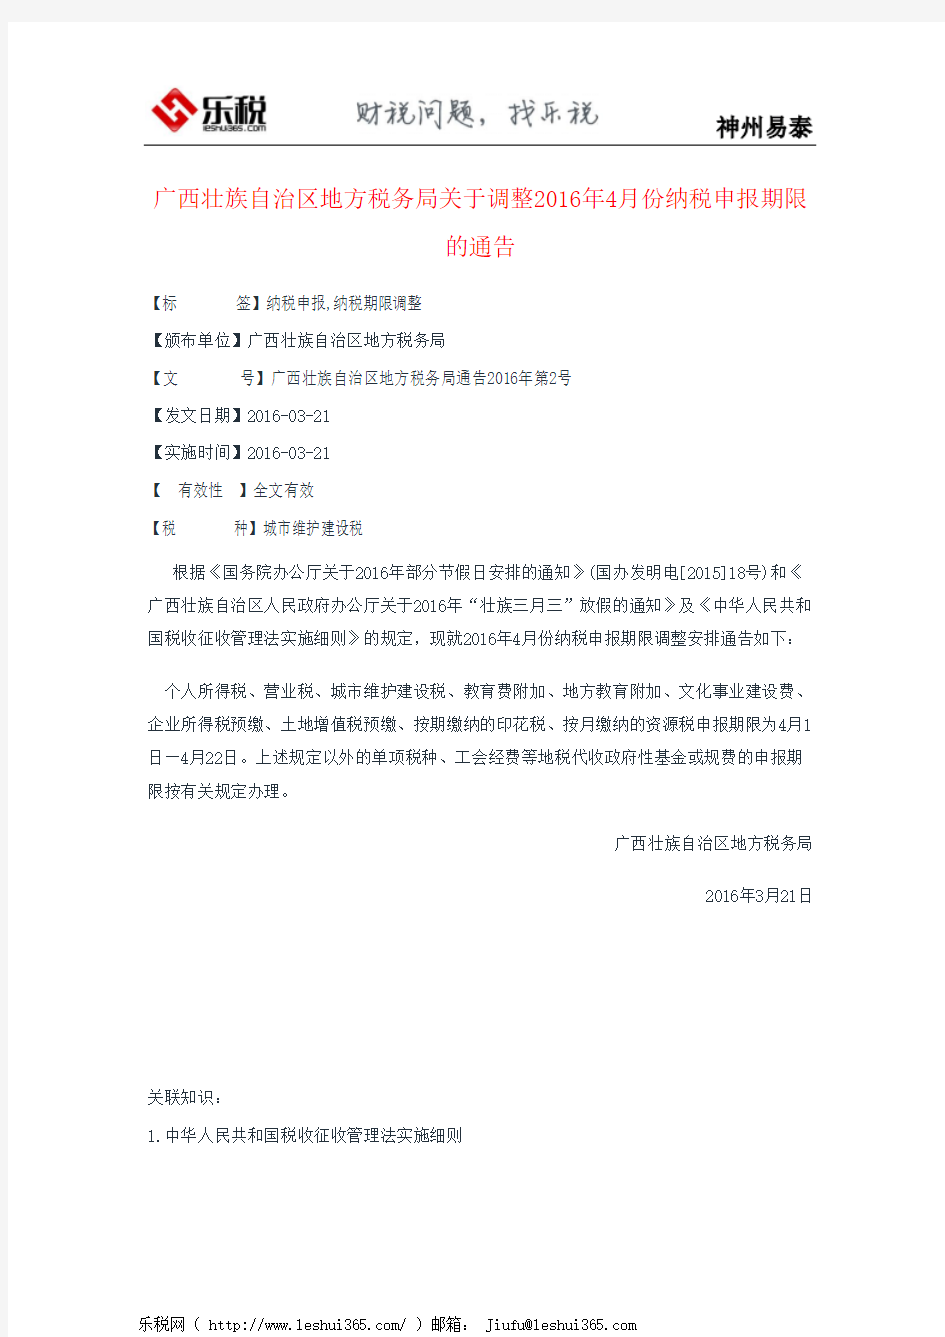 广西壮族自治区地方税务局关于调整2016年4月份纳税申报期限的通告